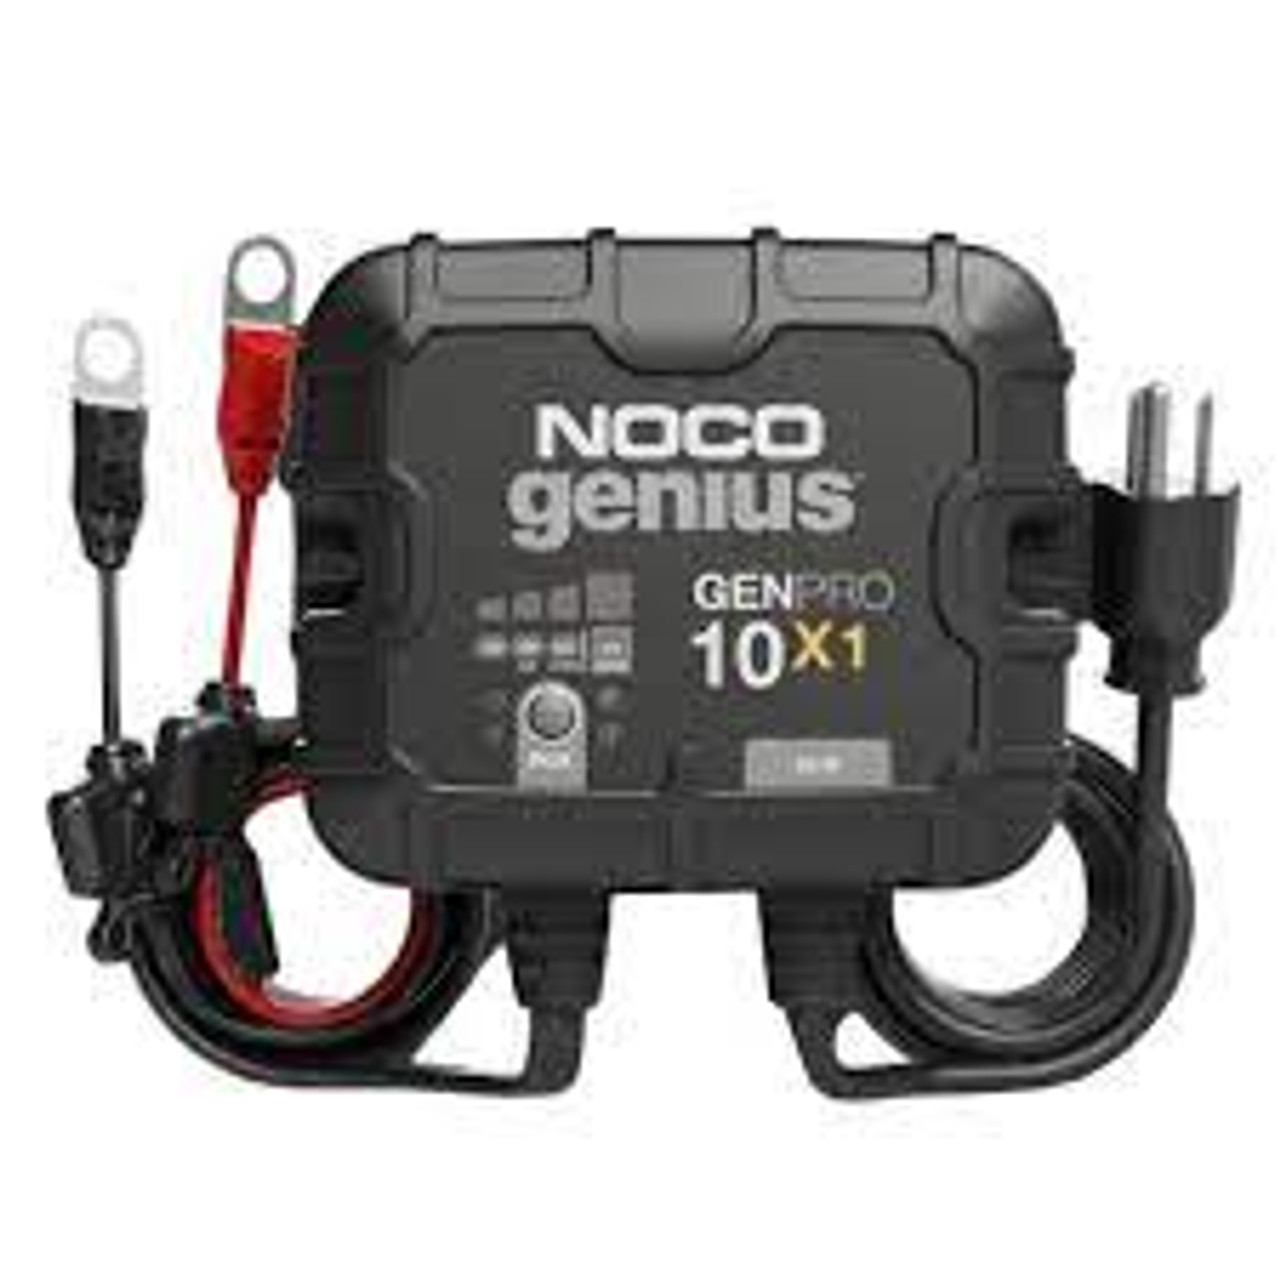 Cargador y Mantenedor de Batería Noco GENPRO10x3 - Nautica GM